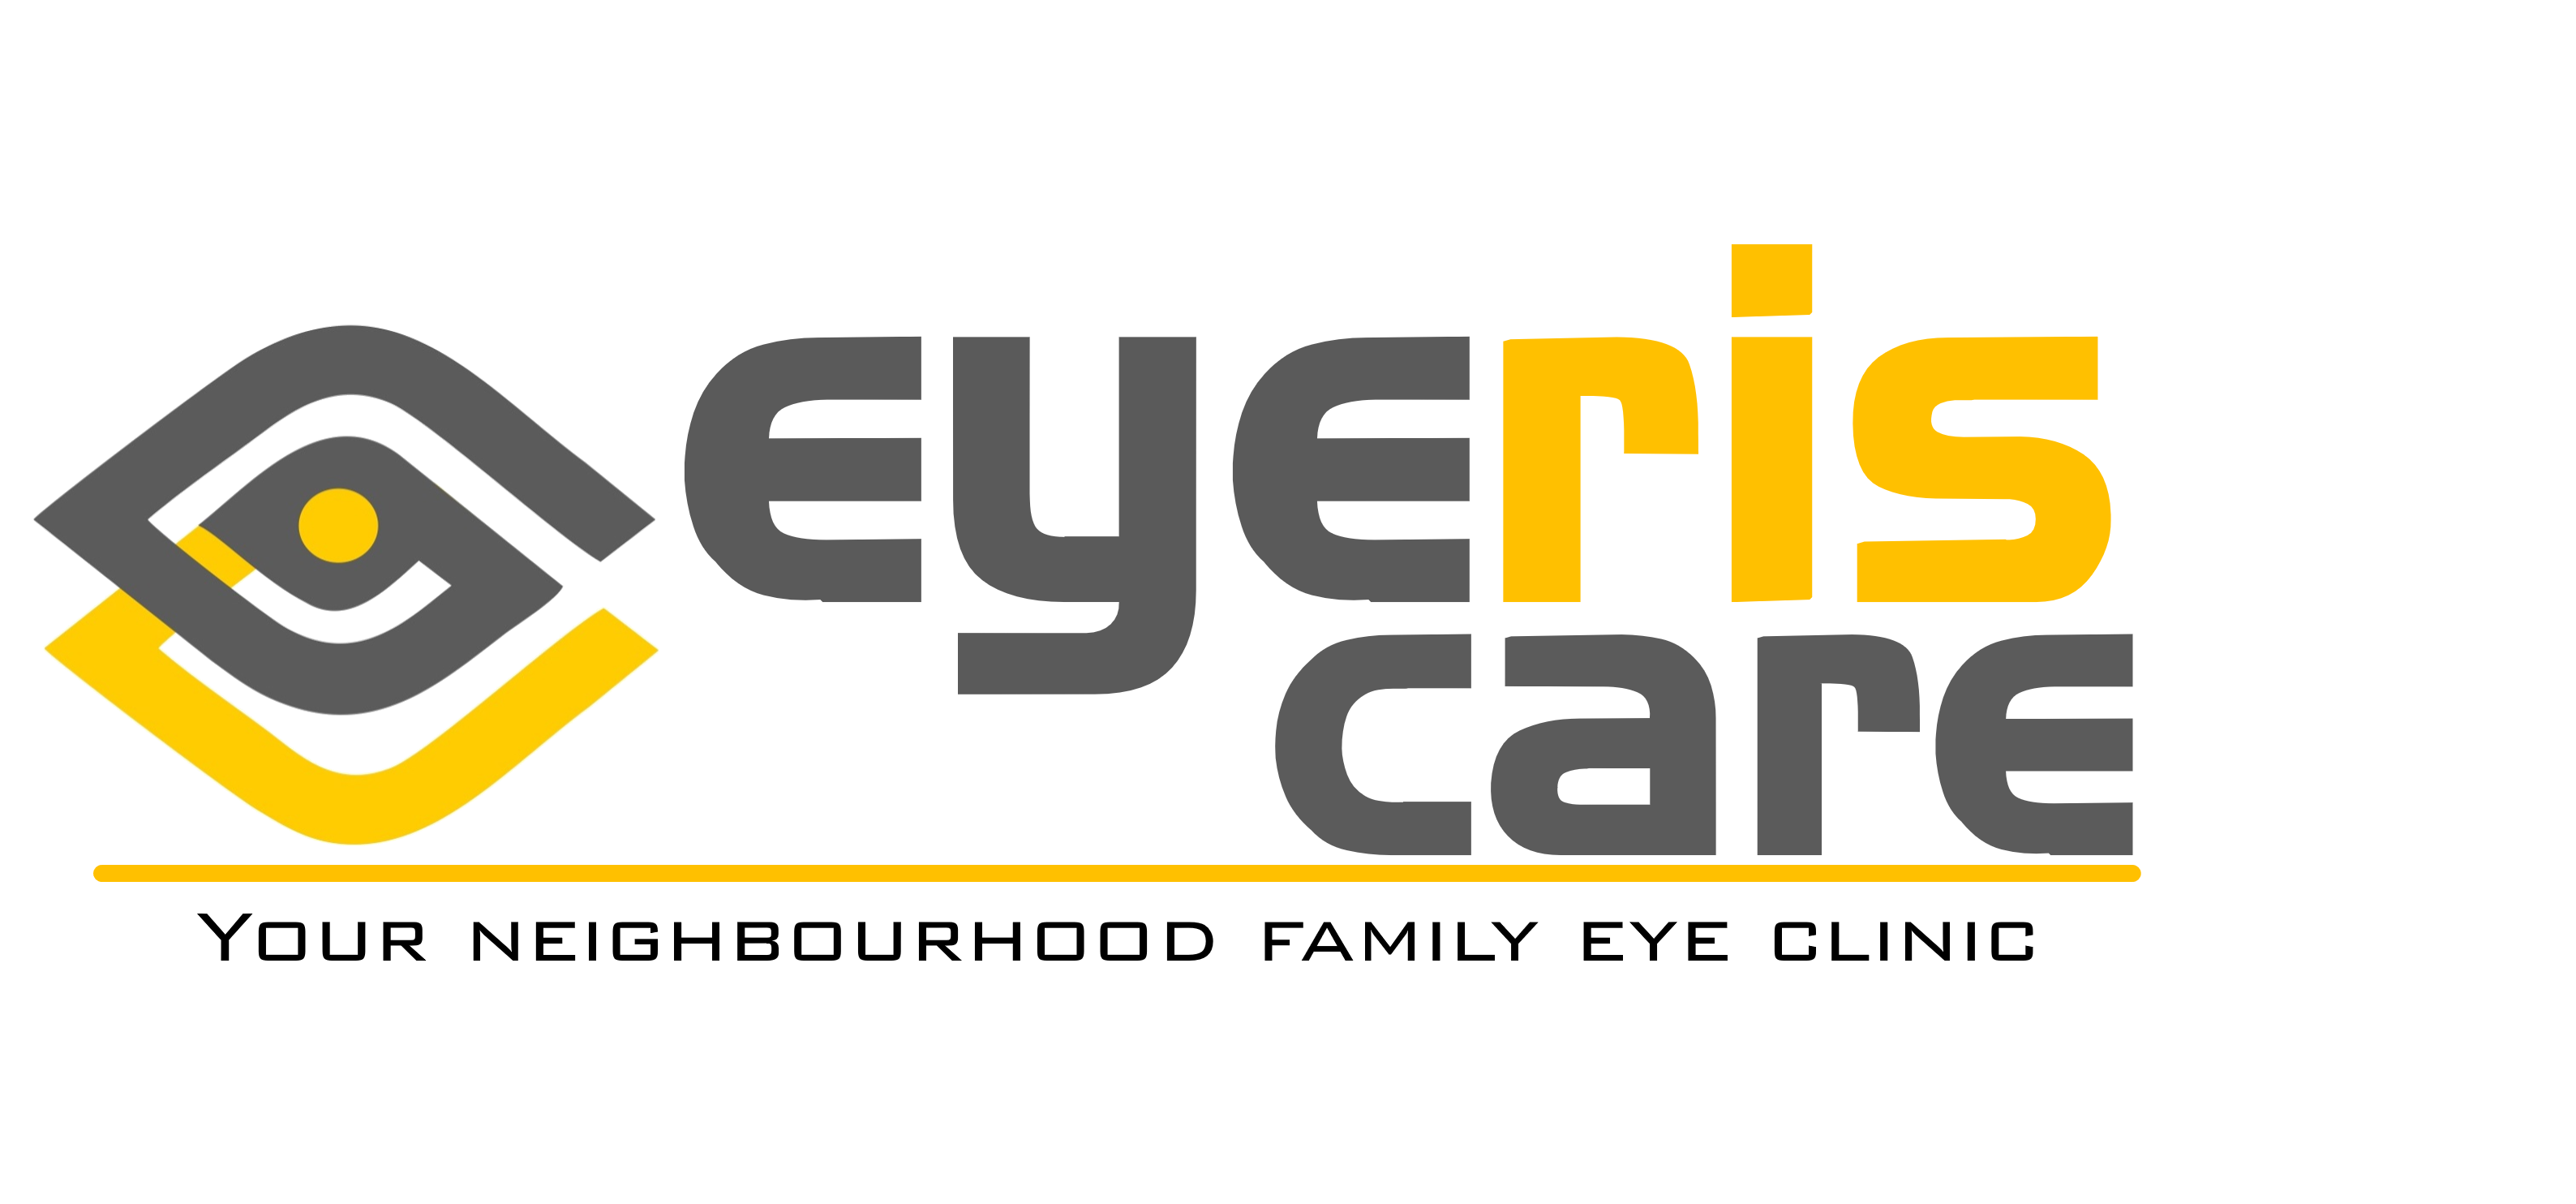 Eyeris eye care